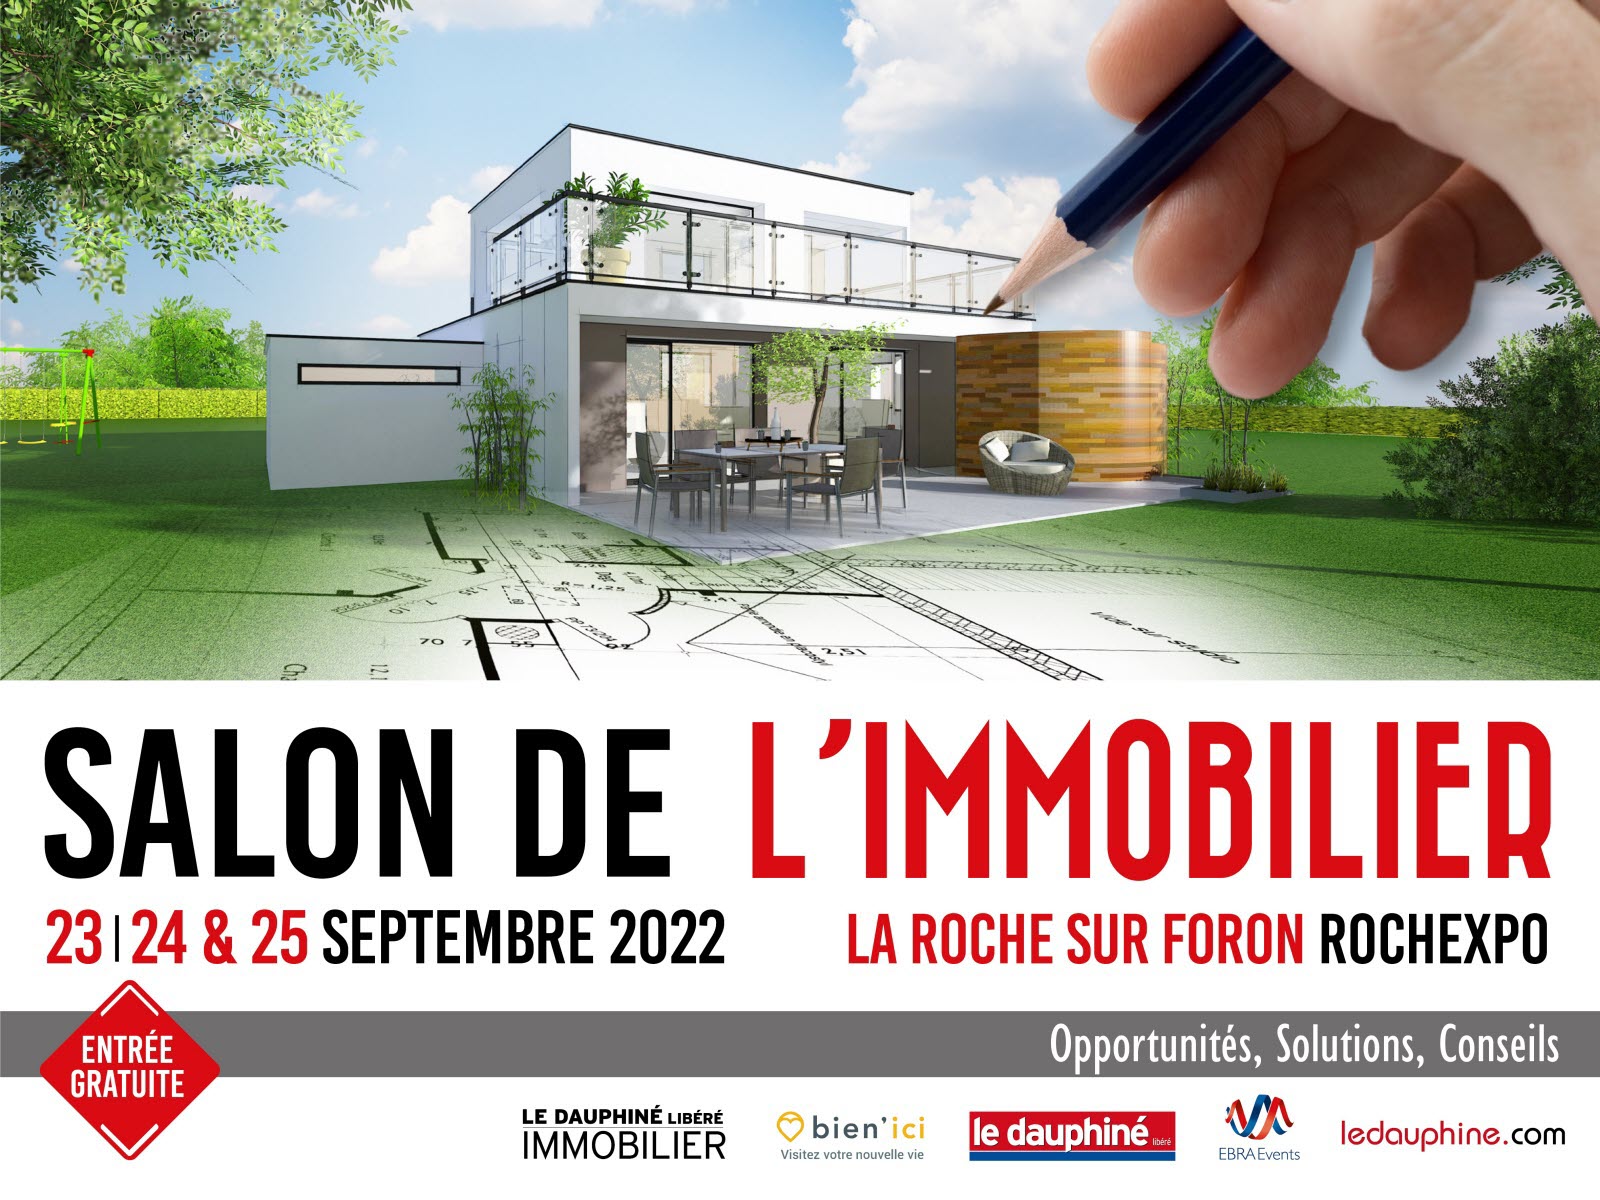 Salon de l'Immobilier La Roche sur Foron